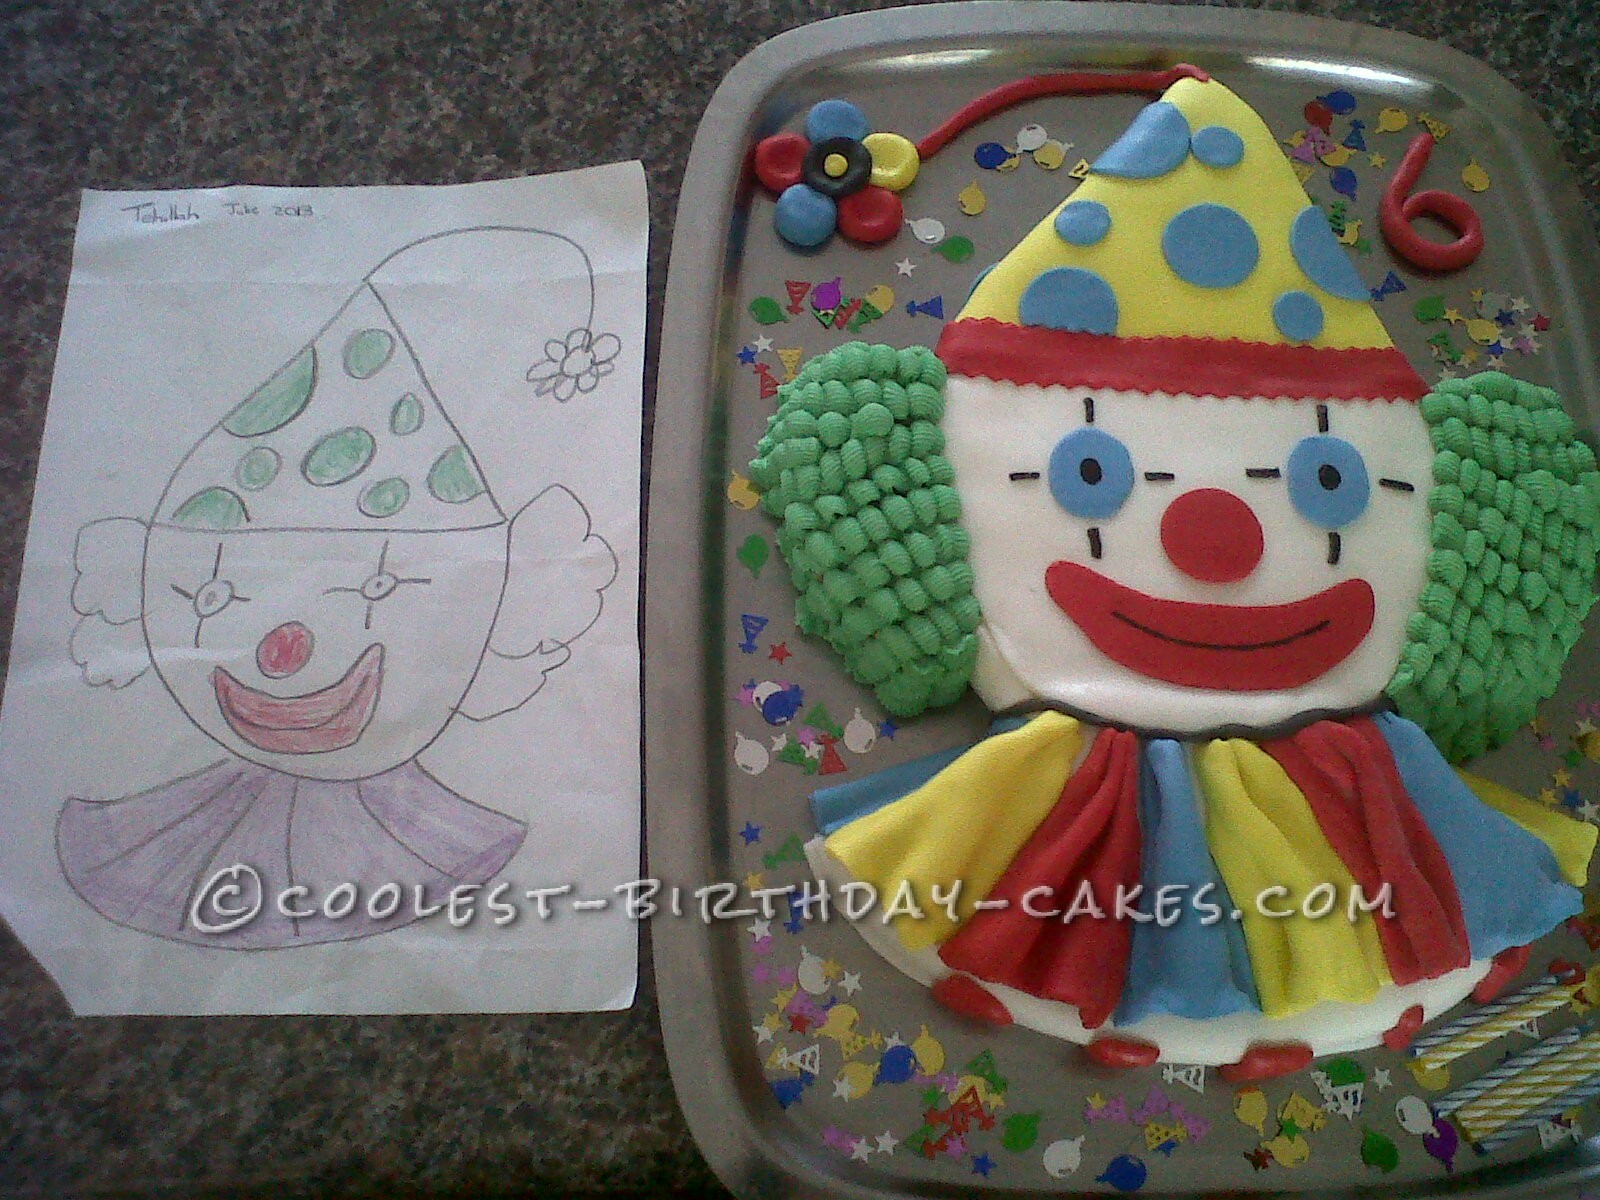 Coolest Homemade Clown Cake